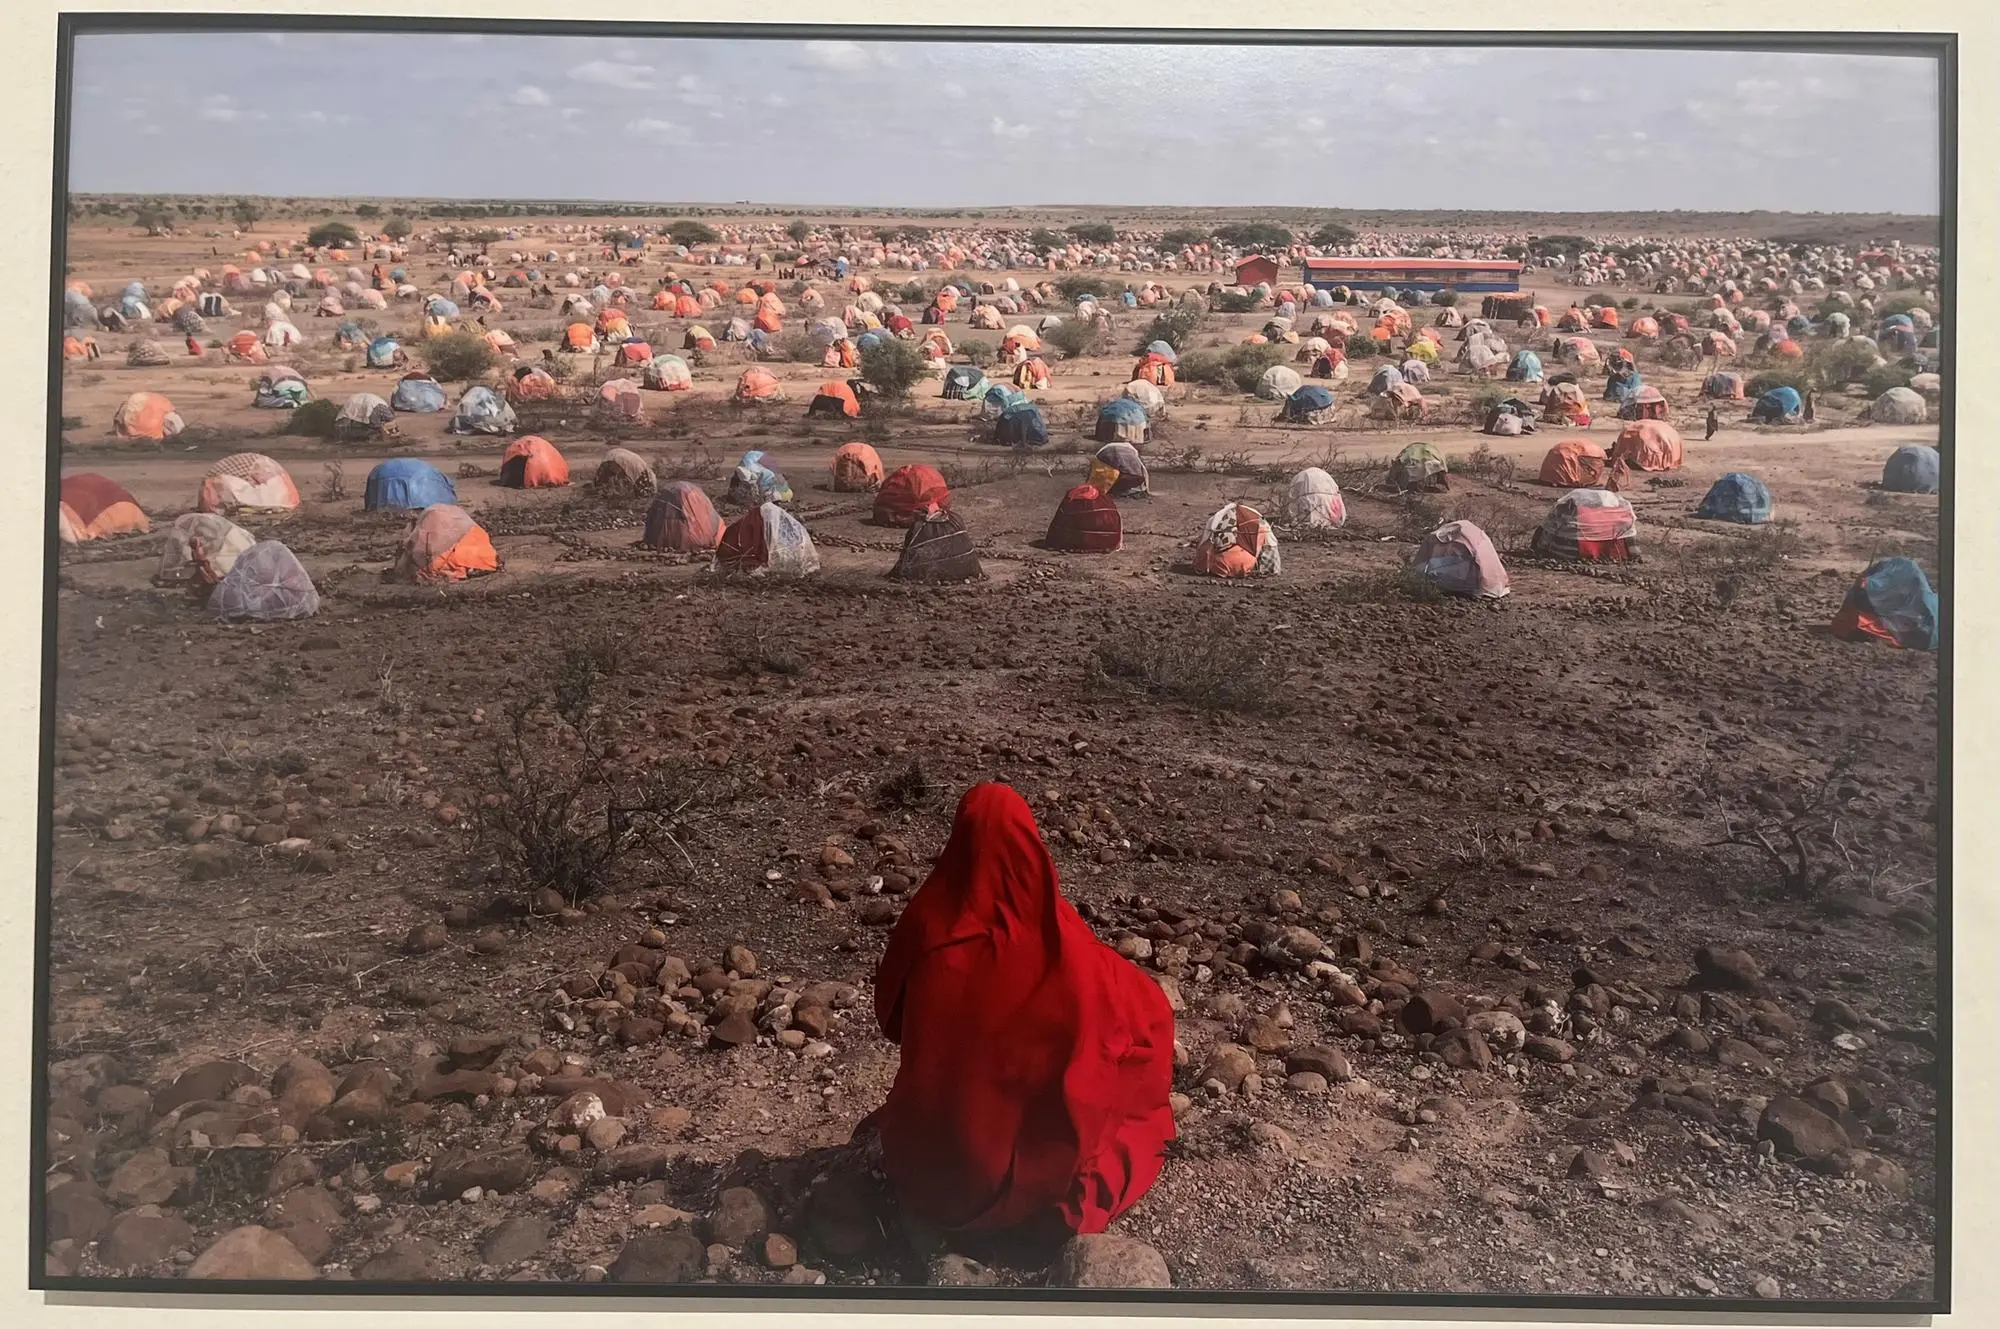 Riproduzione della foto che ritrae un campo profughi in Etiopia (foto V. Pinna)